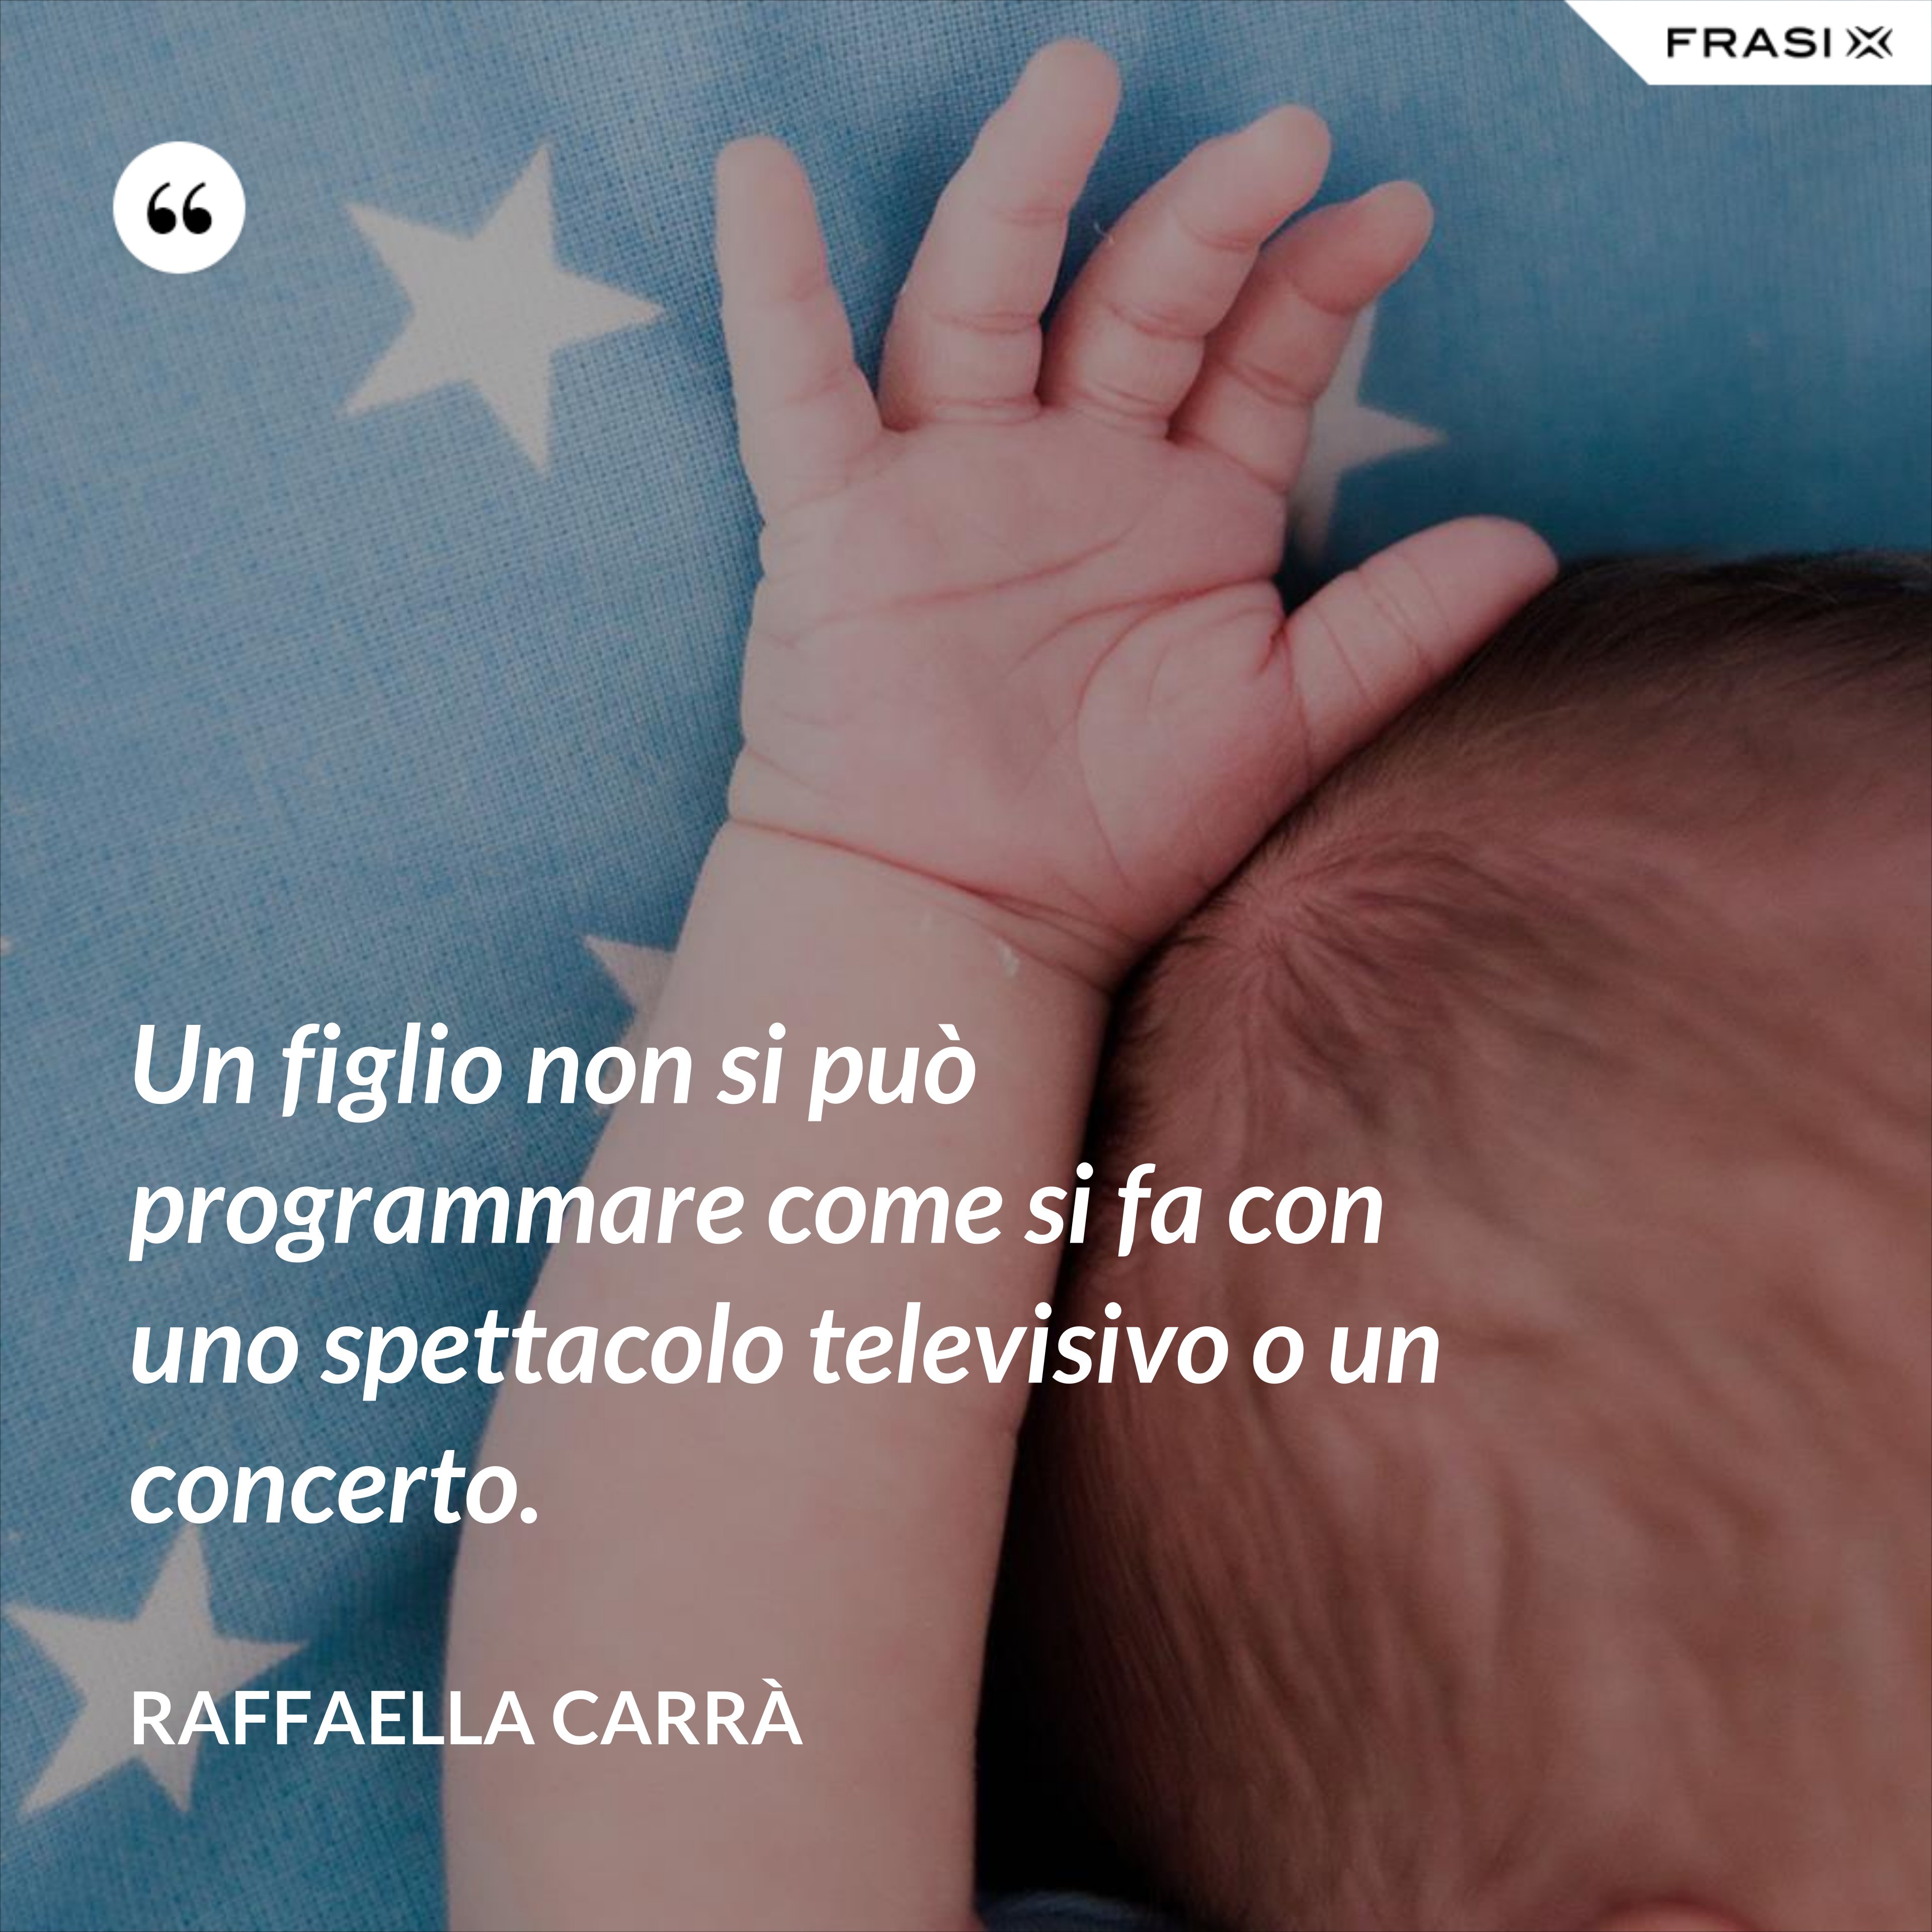 Un figlio non si può programmare come si fa con uno spettacolo televisivo o un concerto. - Raffaella Carrà